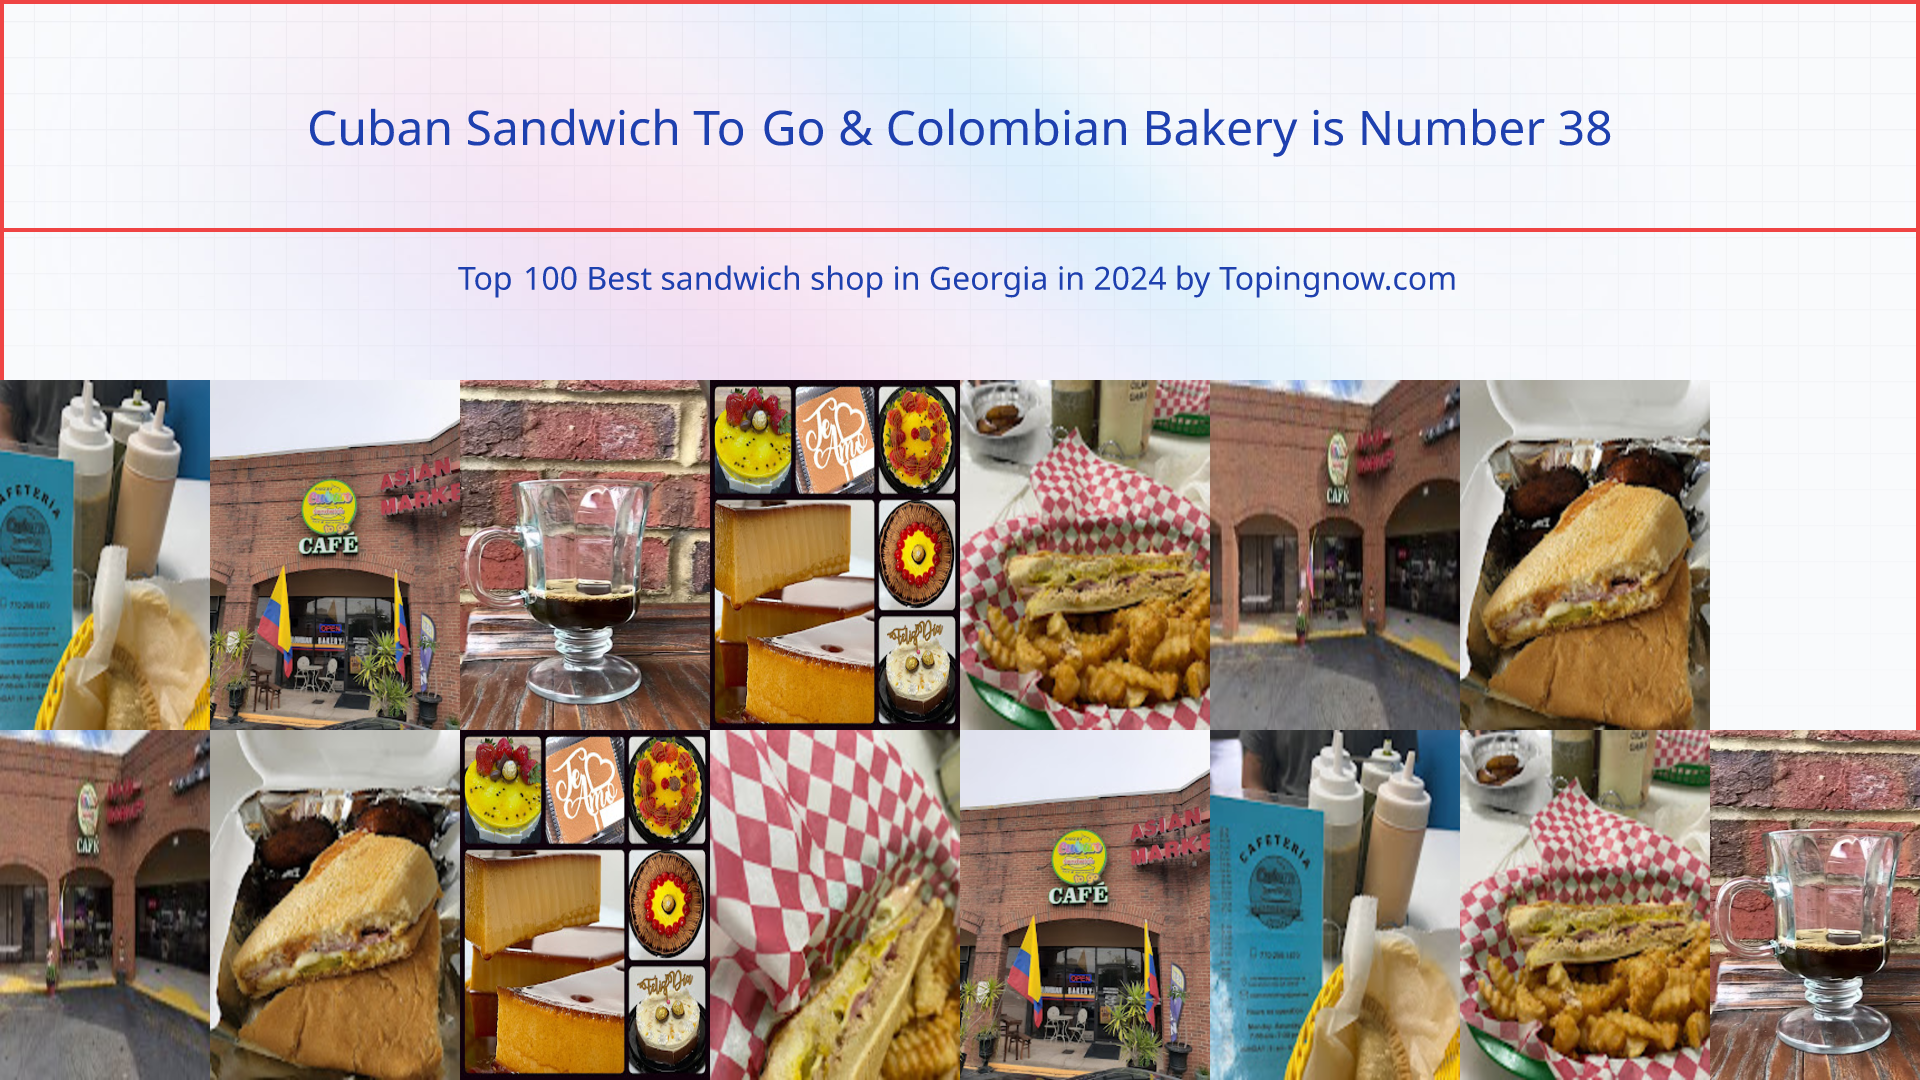 Cuban Sandwich To Go & Colombian Bakery: Top 100 Best sandwich shop in Georgia in 2024